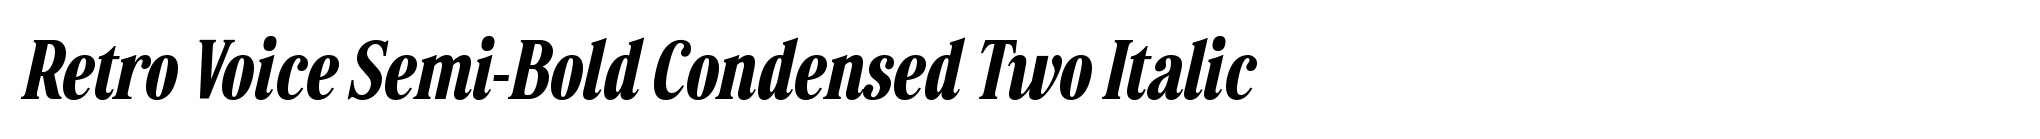 Retro Voice Semi-Bold Condensed Two Italic image